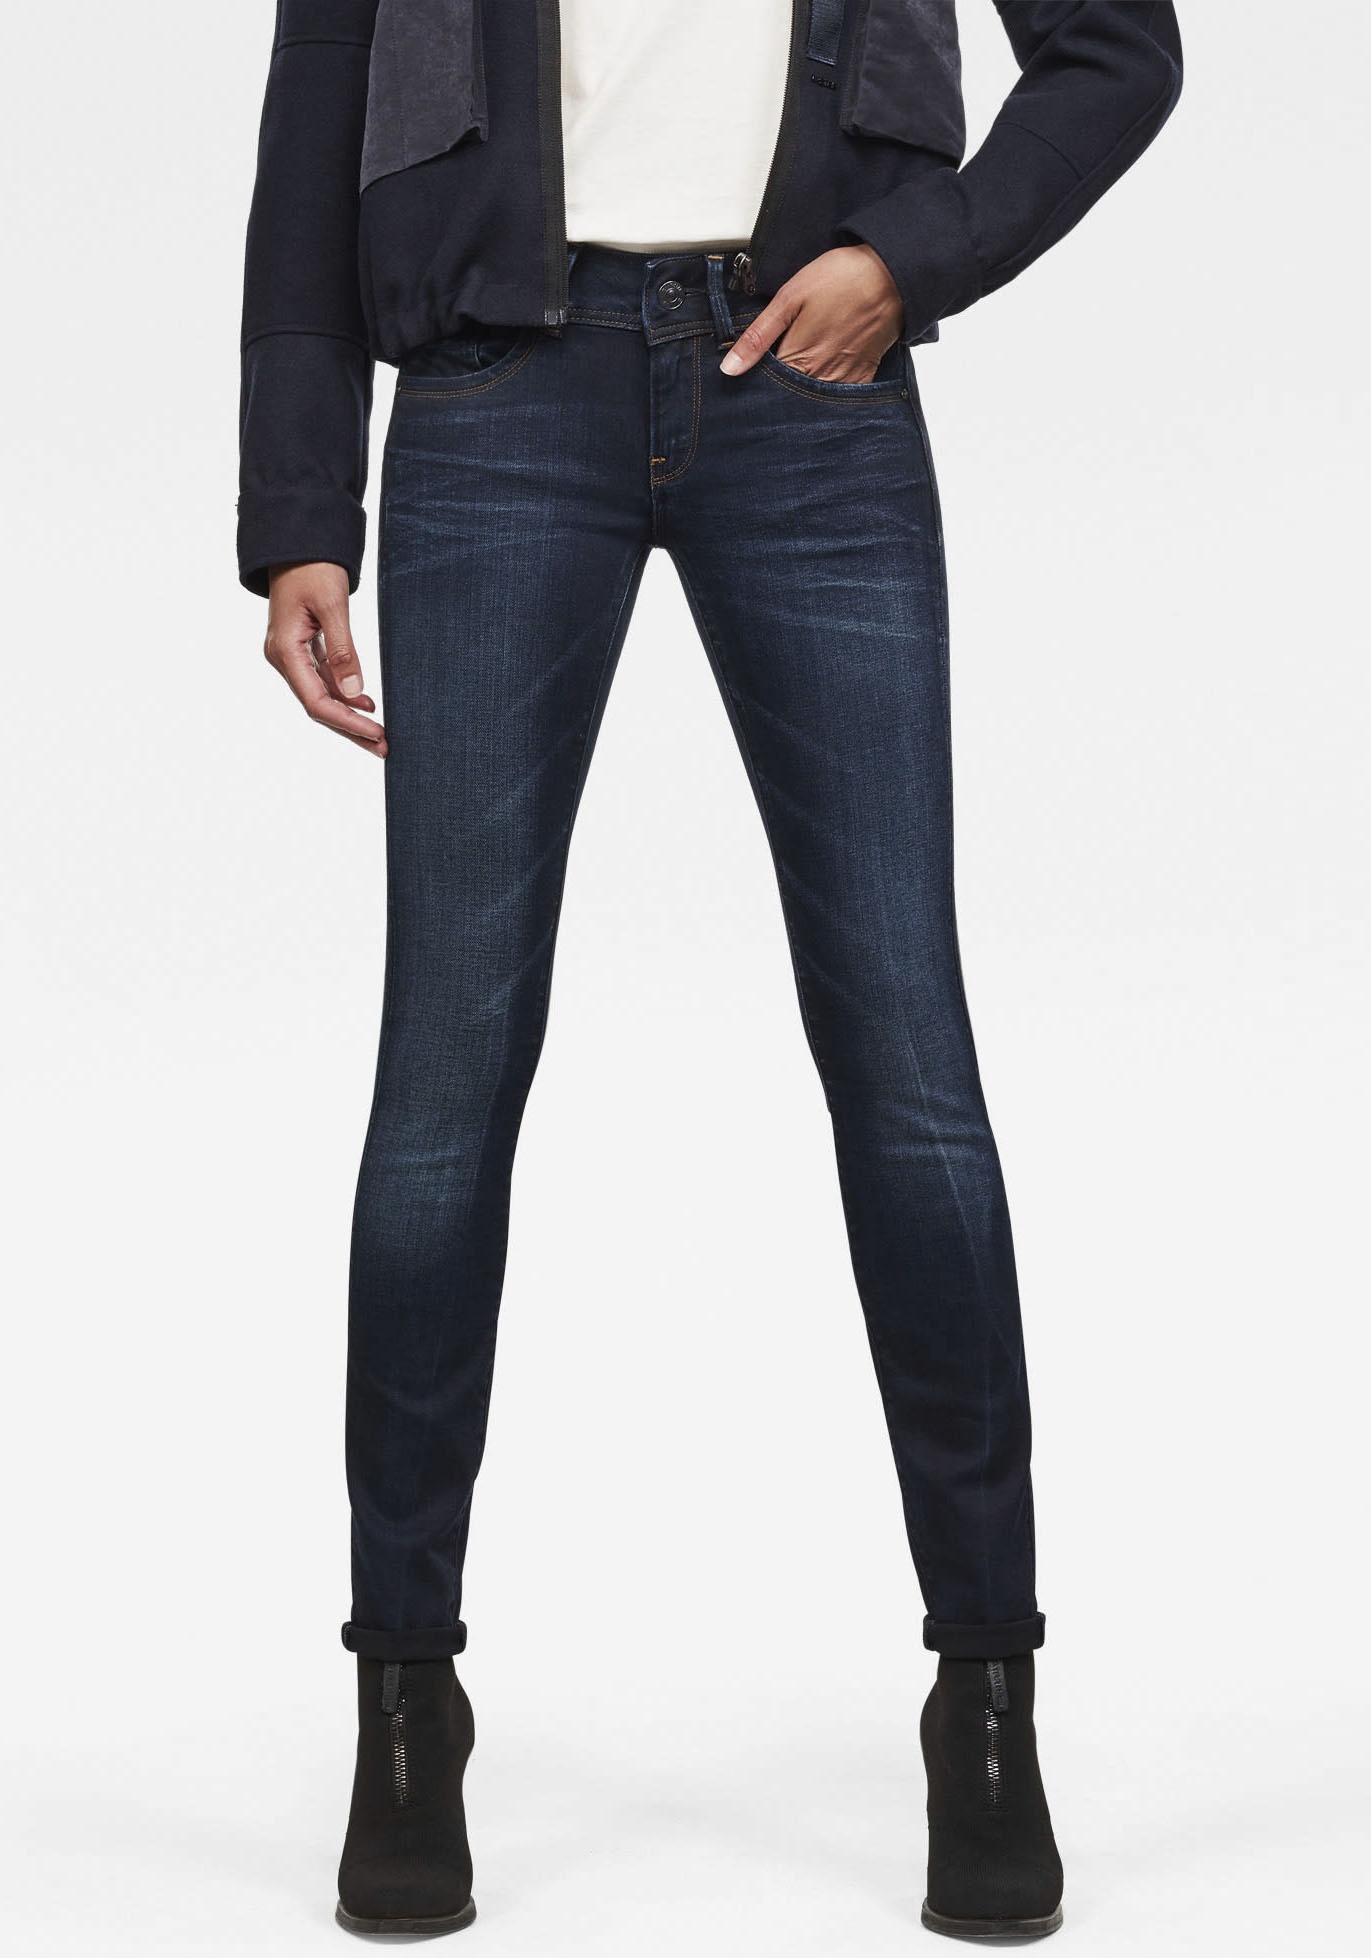 Skinny-fit-Jeans G-STAR RAW "Mid Waist Skinny" Gr. 30, Länge 32, blau (medium aged) Damen Jeans Röhrenjeans